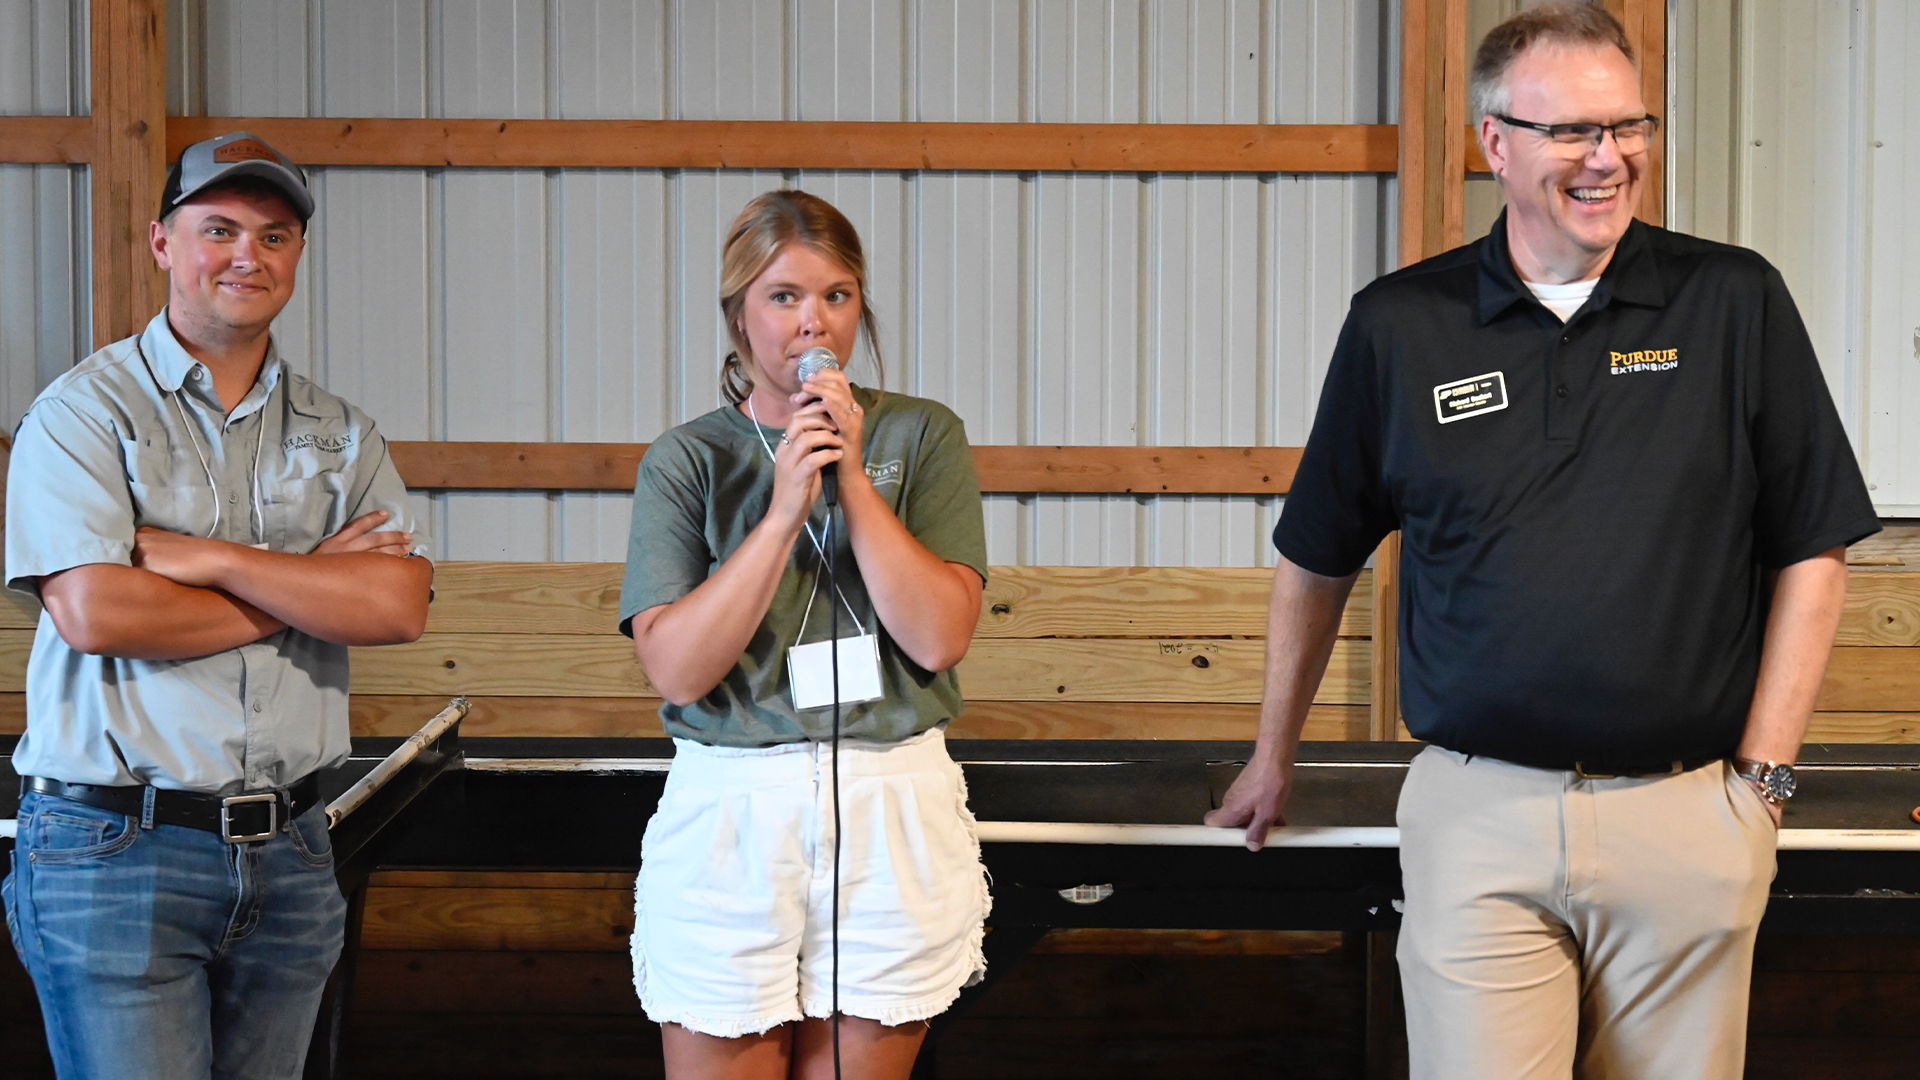 Victor Hackman, Megan VanLiew, and Michael Langemeier during the Hackman Farms visit at the Purdue Farm Management Tour.